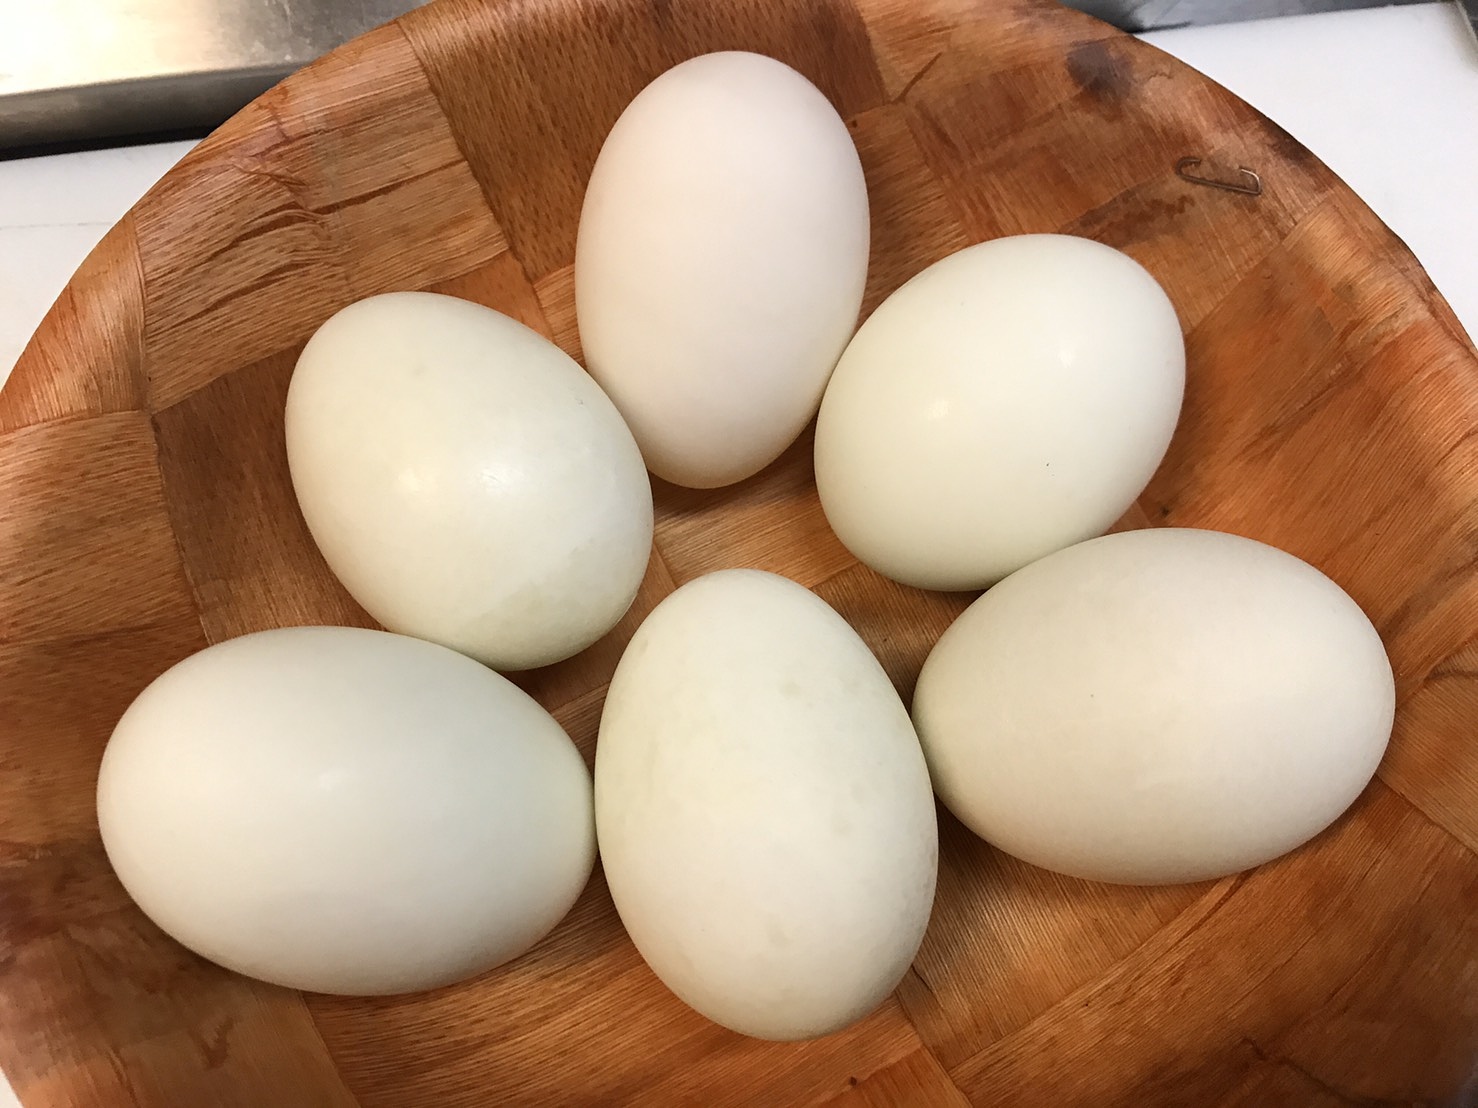 แกงเคยไข่เป็ด ง่ายกว่านี้ก็ไข่ดาวแล้วครับ